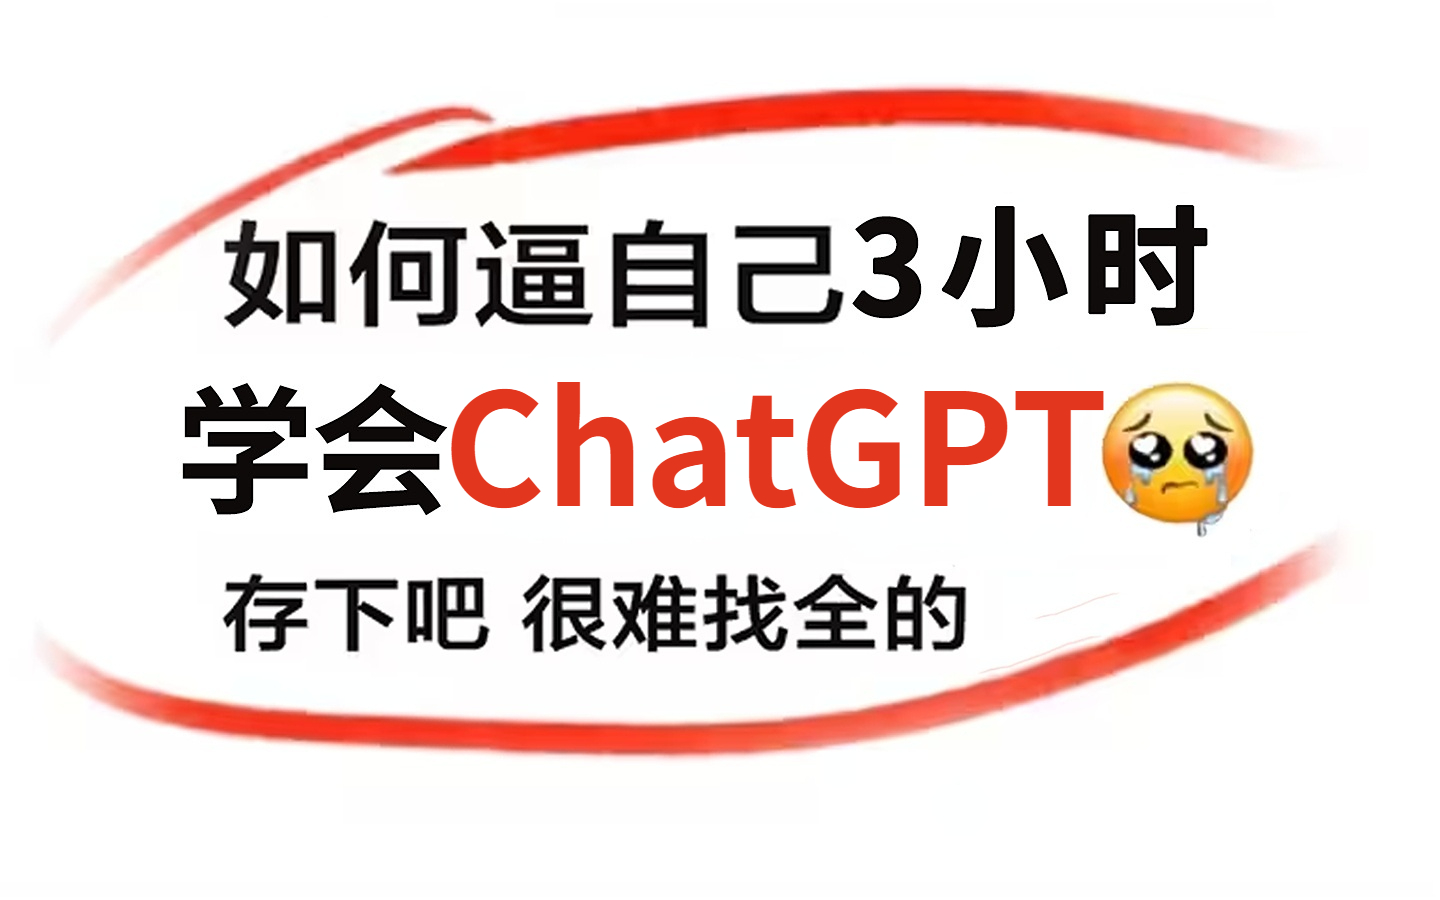 吹爆！这可能是B站目前唯一能将ChatGPT讲清楚的教程了，不愧是计算机大佬！3小时全面了解GPT1-GPT4如何工作，以及用GPT构建应用程序，草覆虫都看懂了